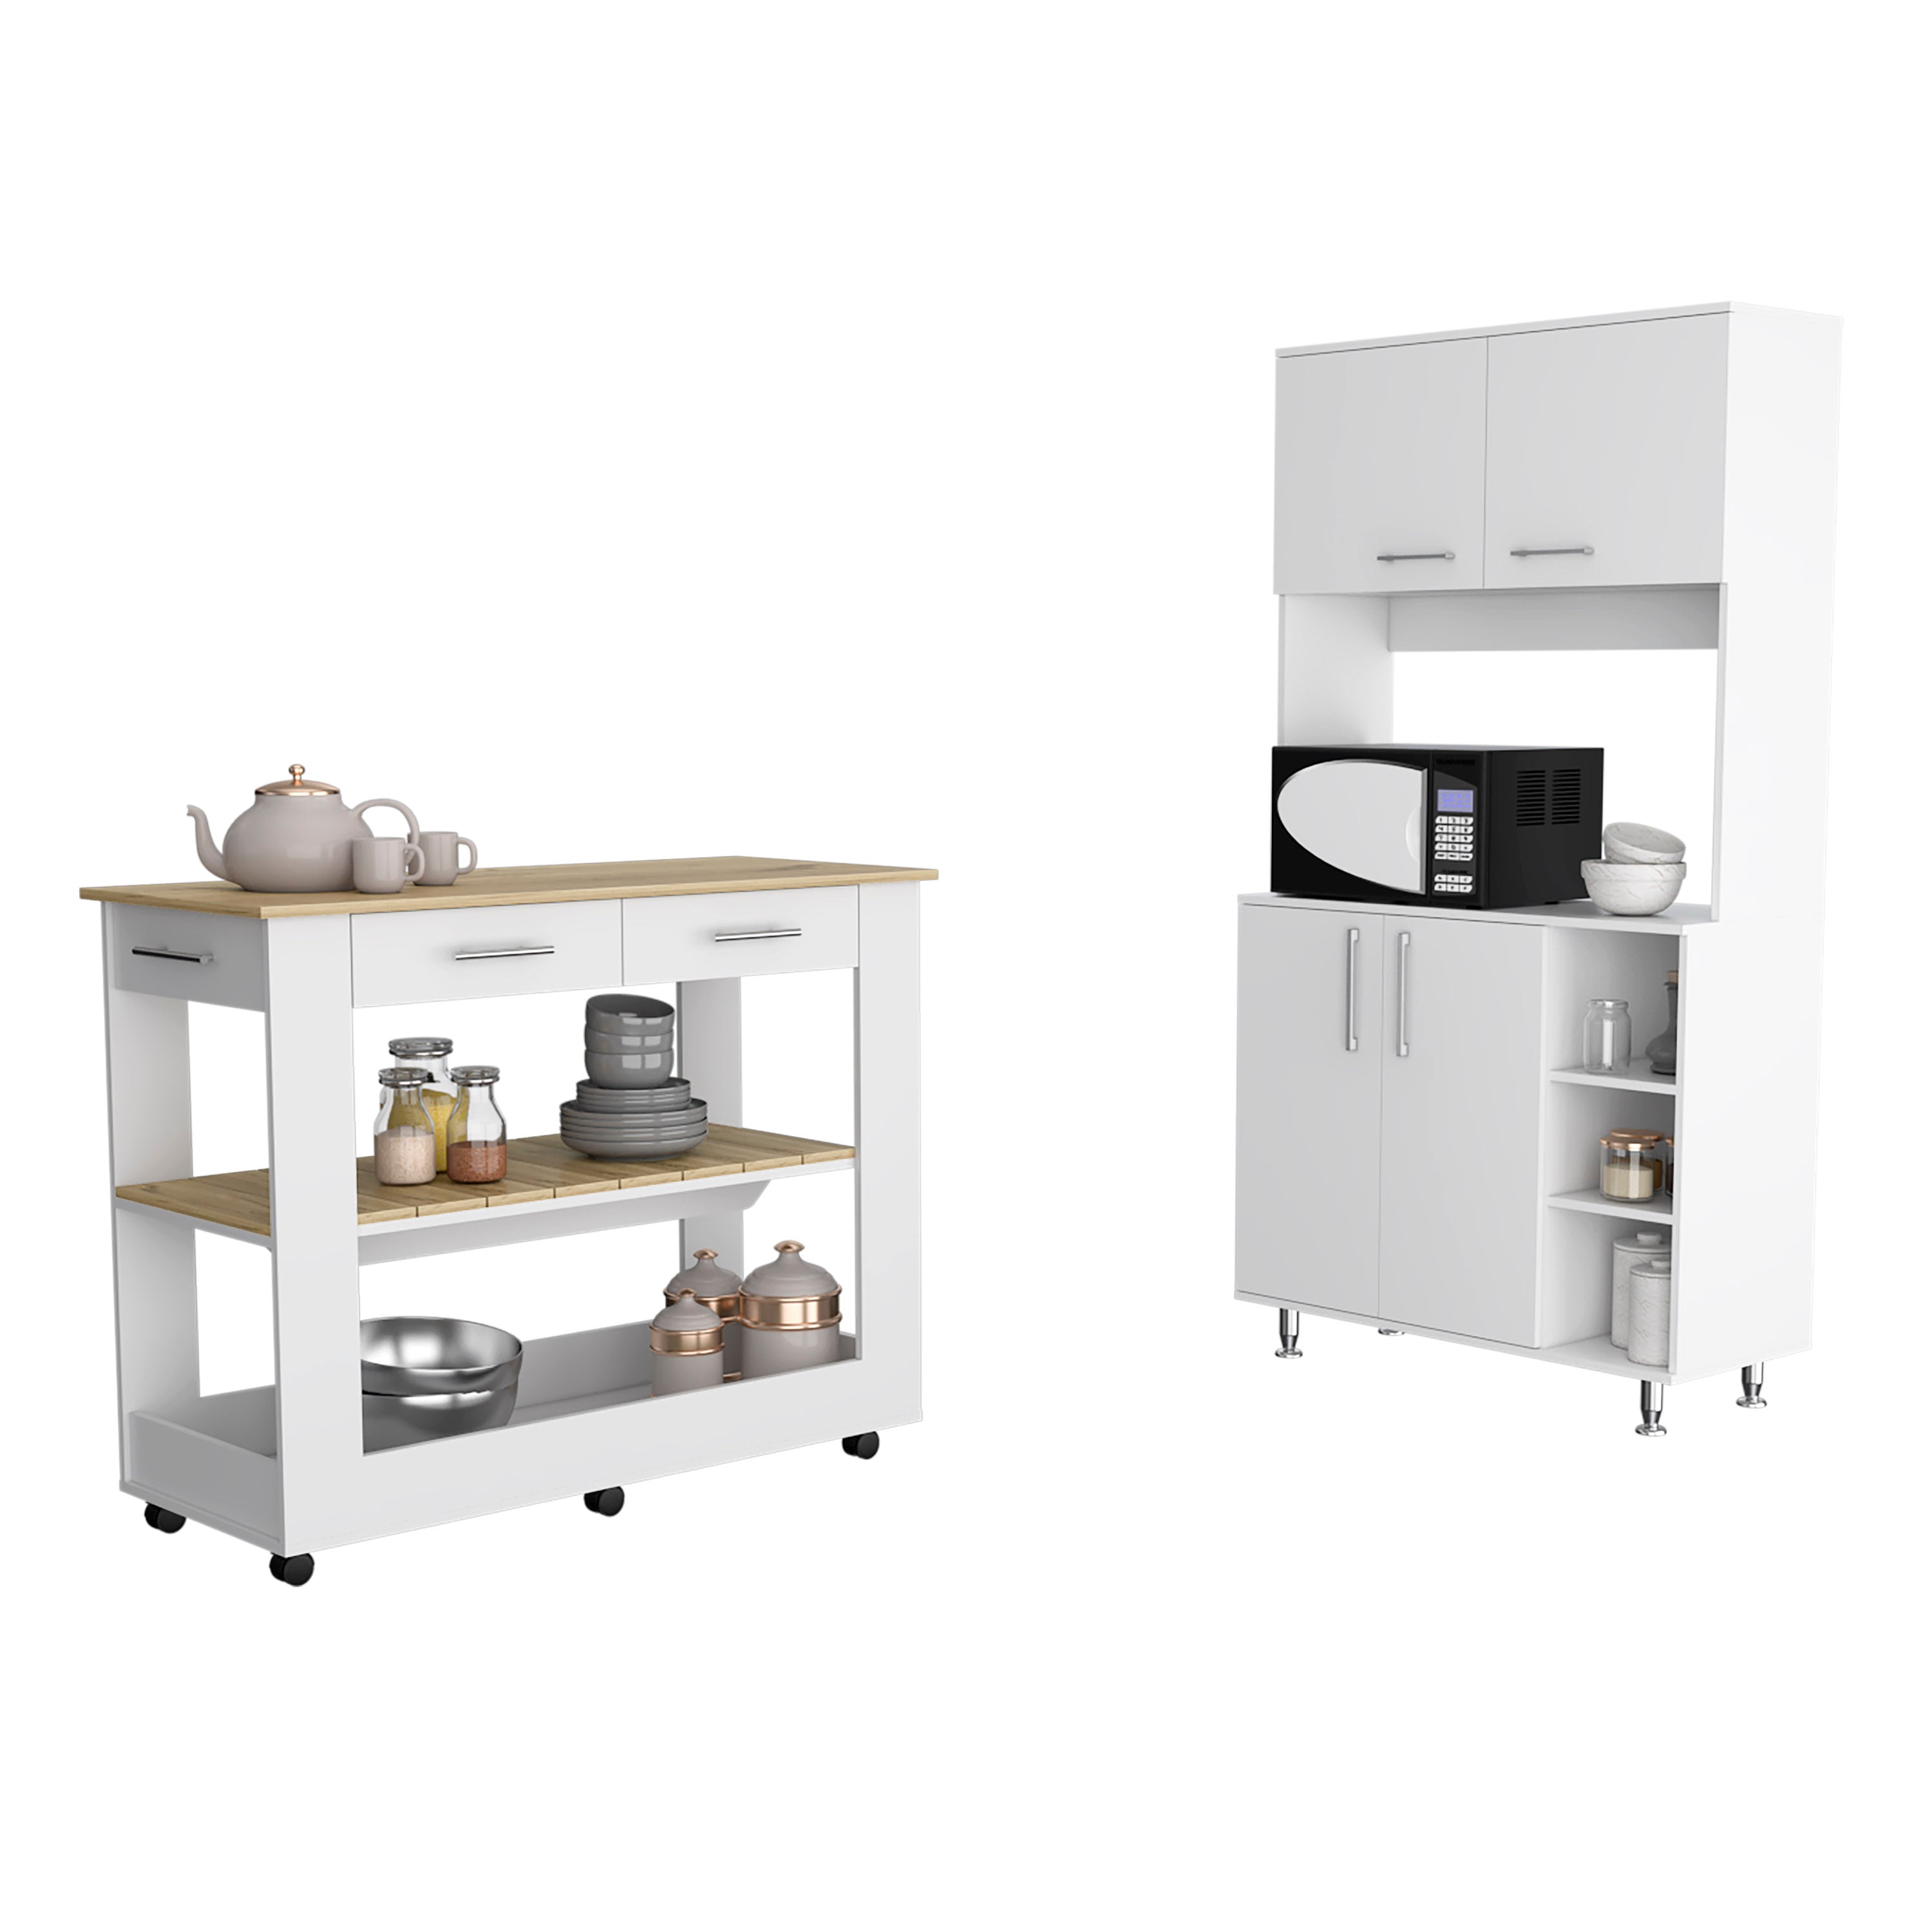 FM Furniture Wenden 2 Piece Kitchen Set, Kitchen Island + Kitchen Pantry, White / Light Oak